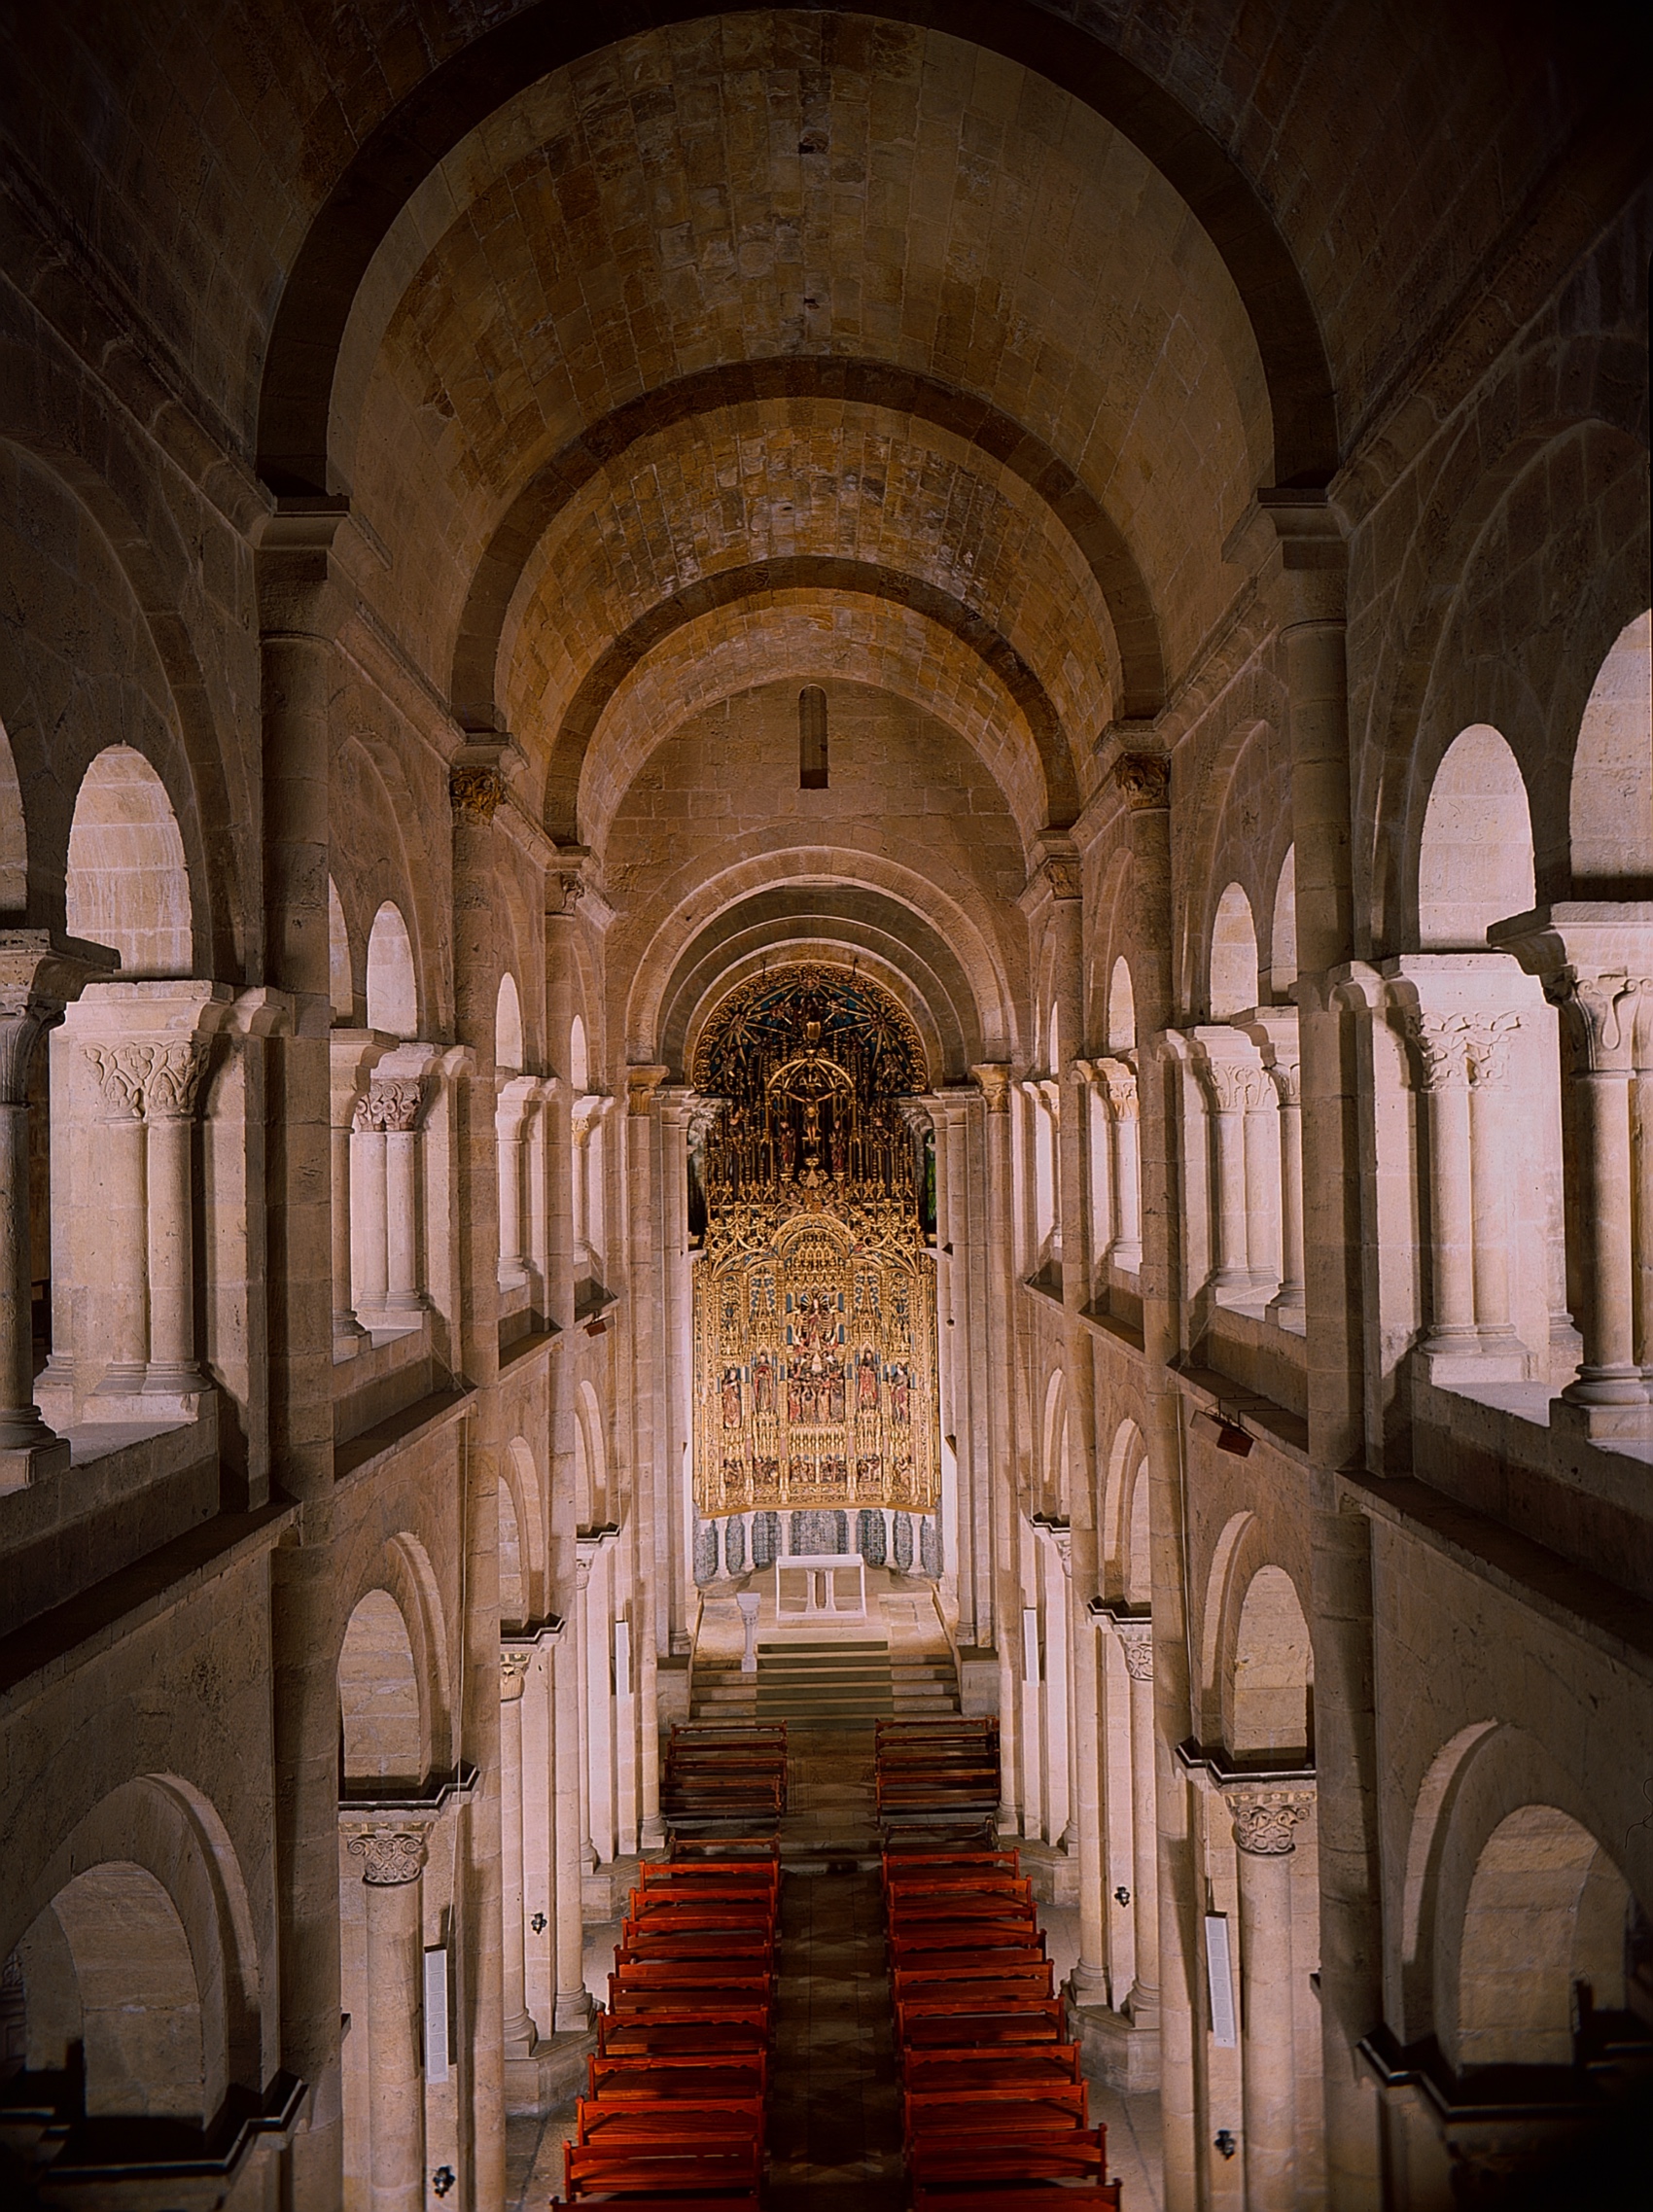 Turismo Centro de Portugal - Monastery Inside